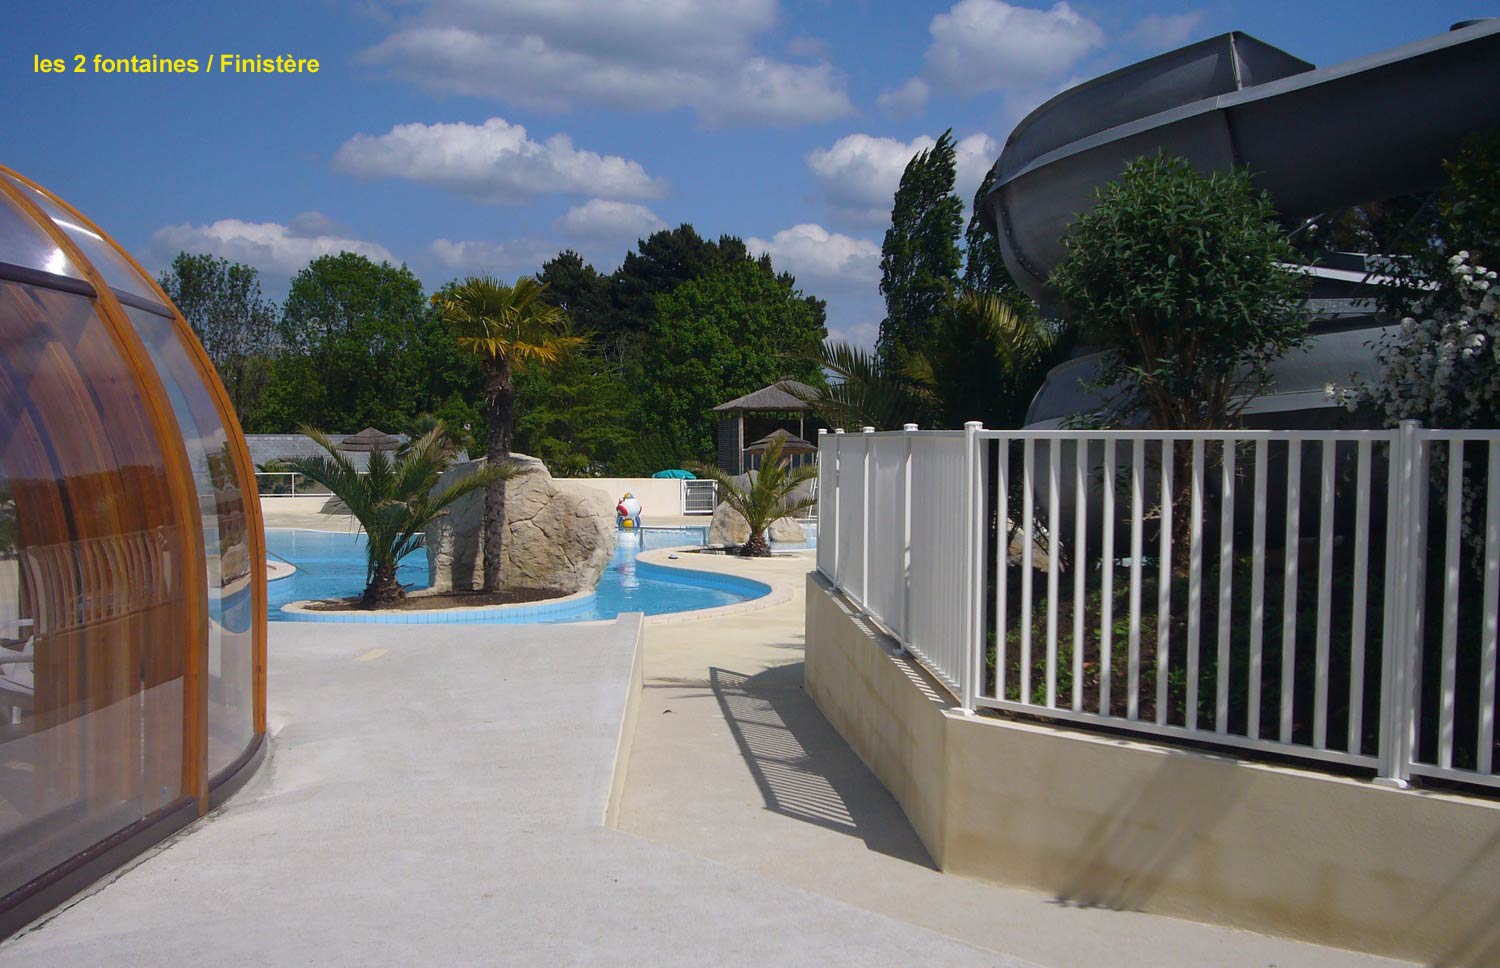 barrière de piscine en verre dans le camping - les 2 fontaines dans le Finistère - clôturant un superbe équipement paysagé avec plusieurs bassins de piscine